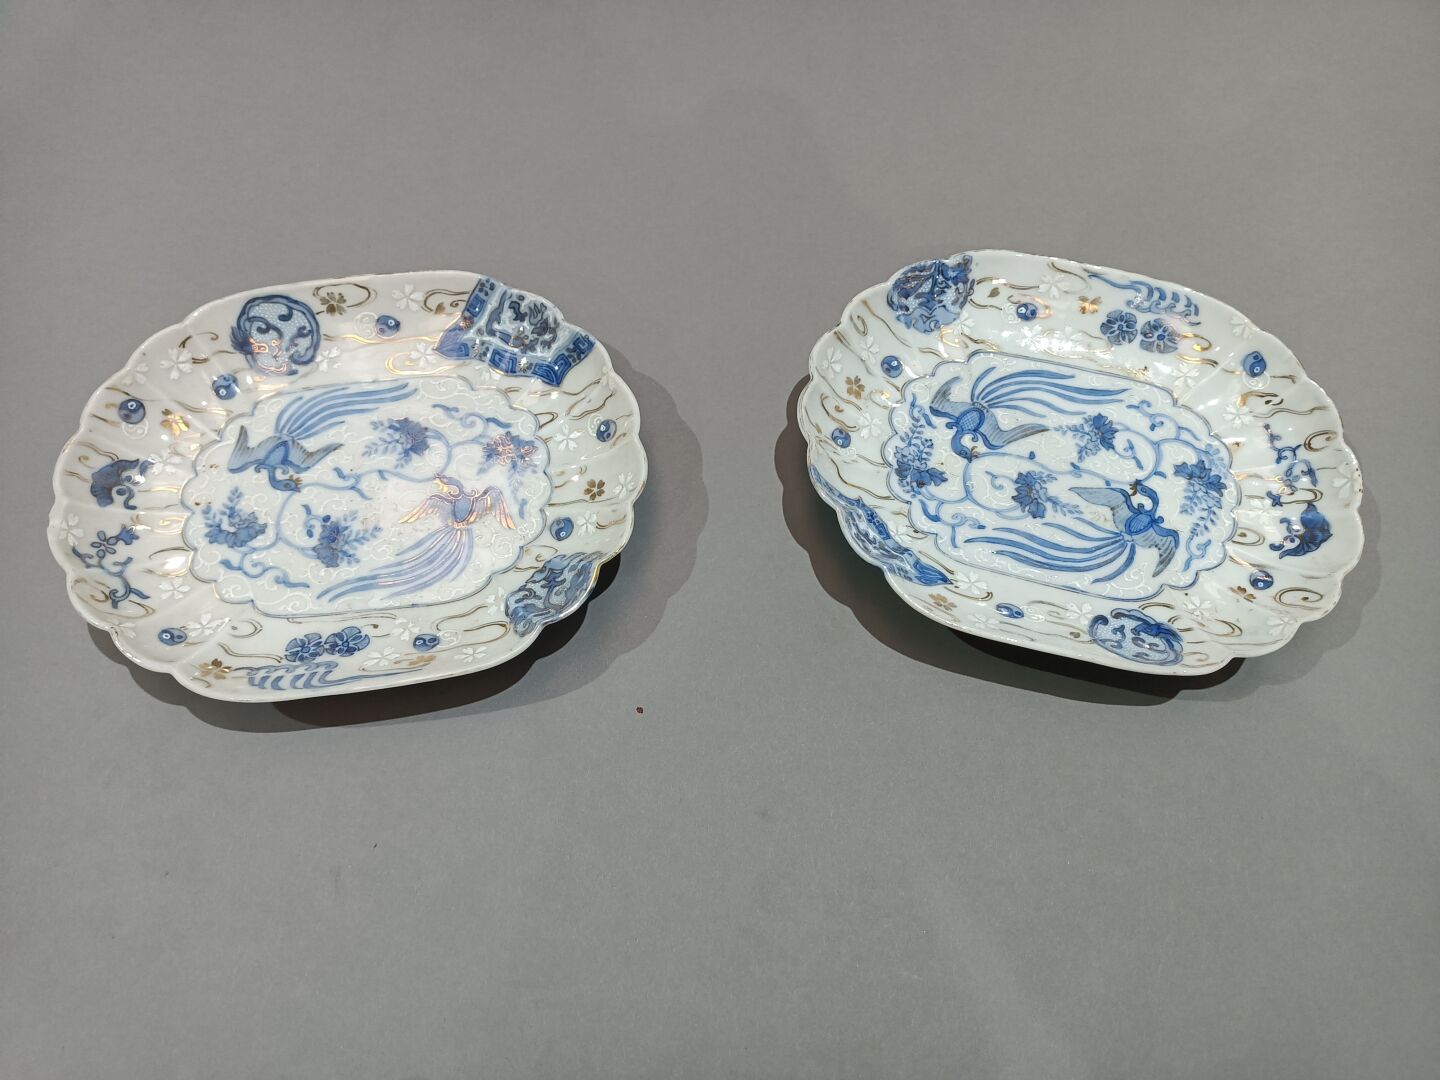 Null 两个蓝色和金色装饰的瓷盘。
日本，19世纪。
19,5 x 16 x 3厘米。